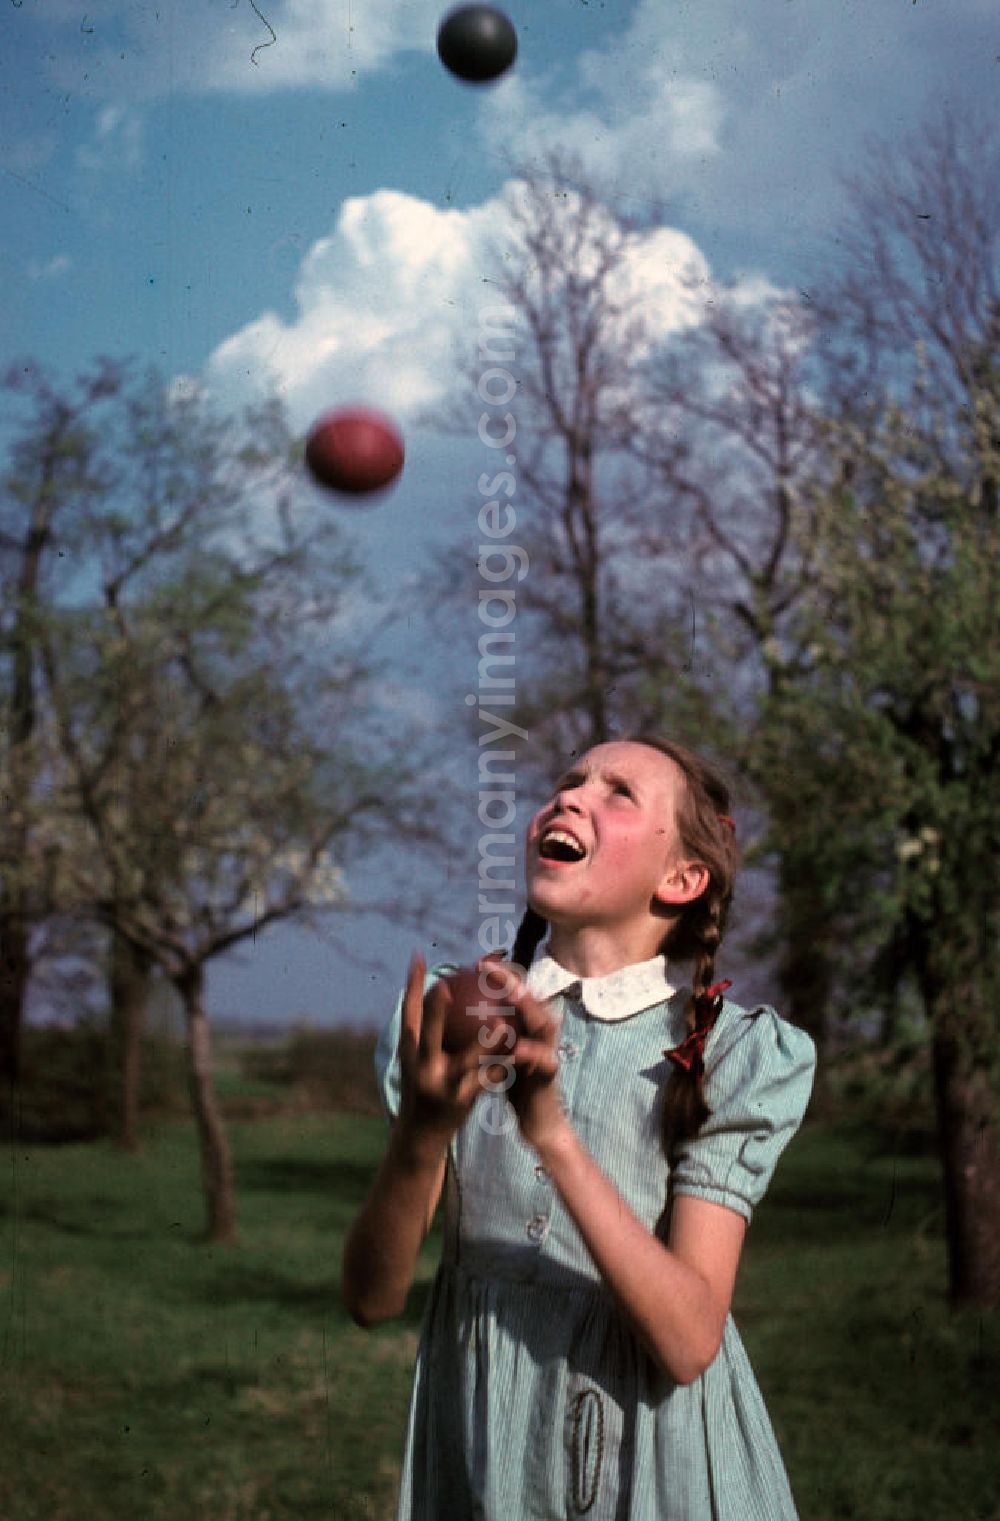 GDR picture archive: Bad Godesberg - Ein Mädchen jongliert mit drei Bällen in einem Park in Bad Godesberg. A girl juggling with three balls in a park in Bad Godesberg.